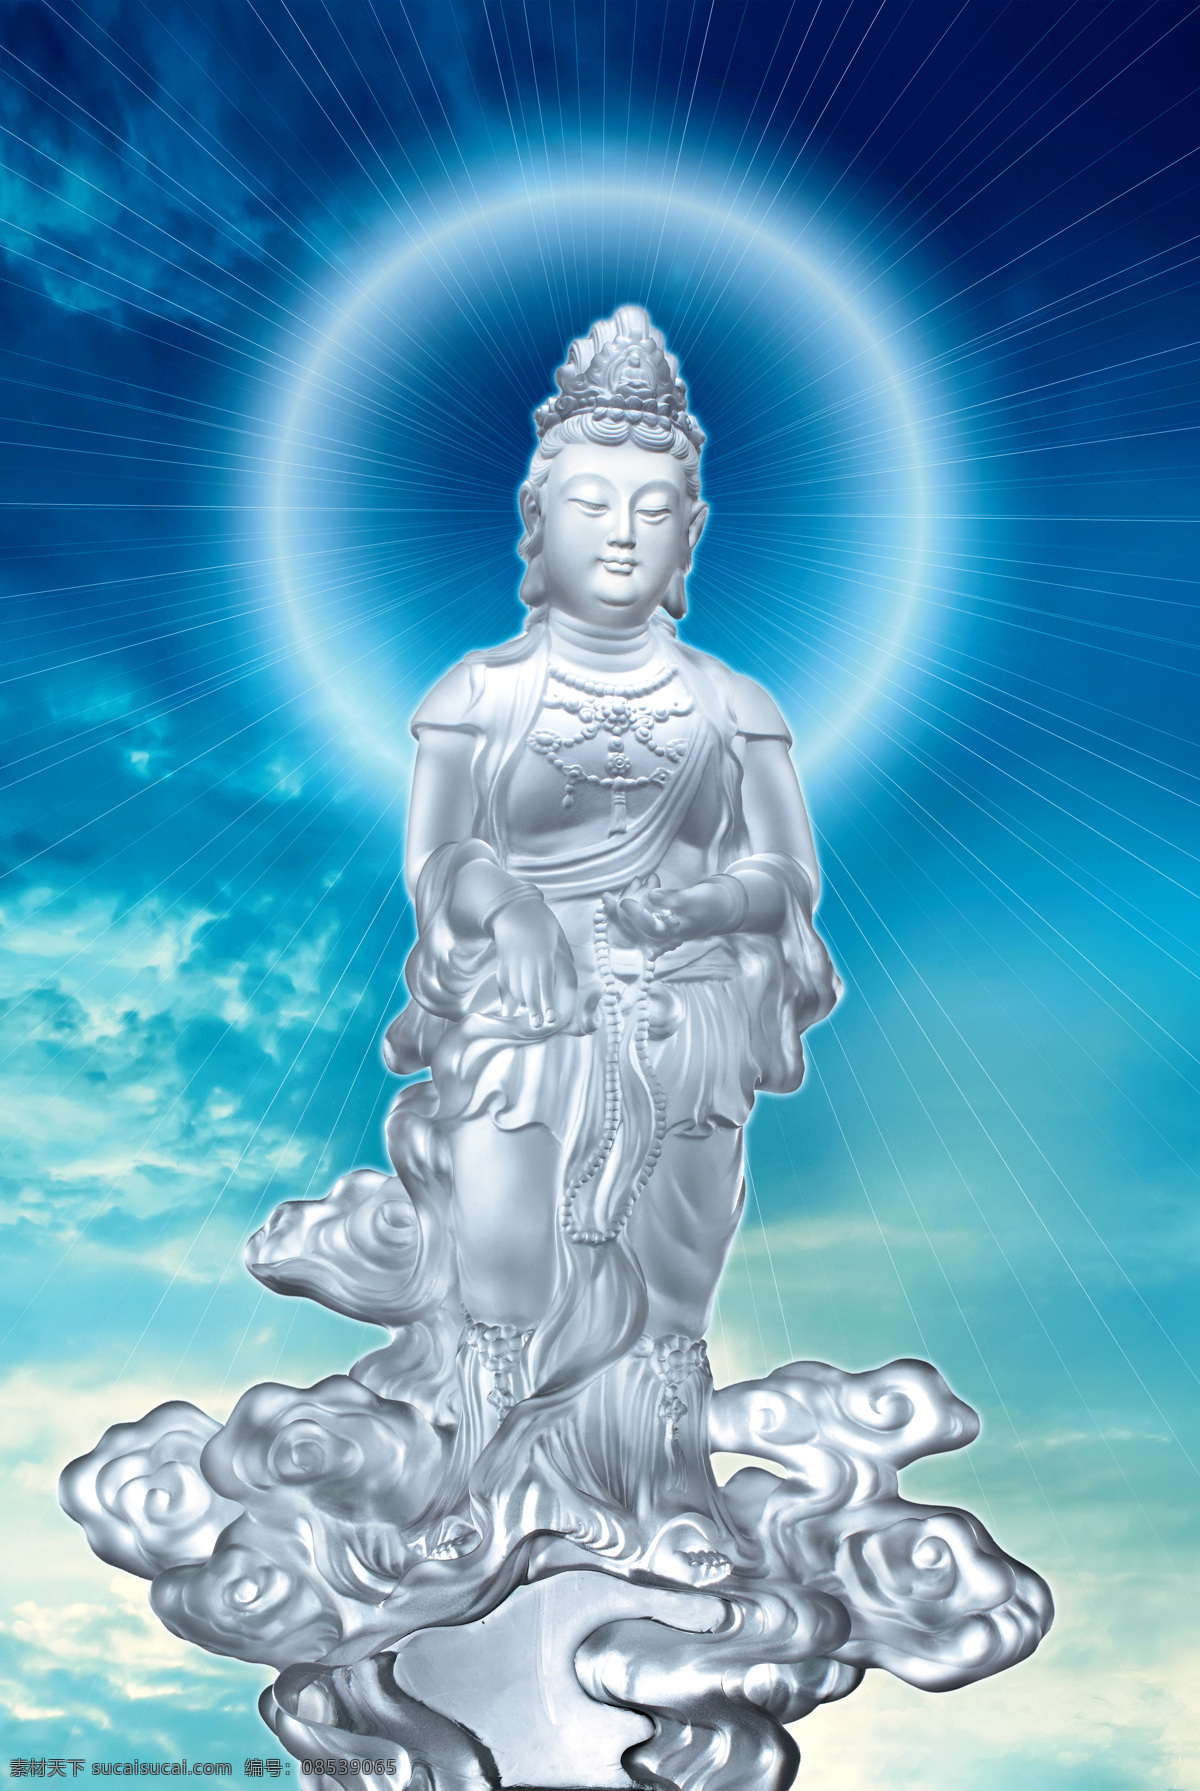 观世音菩萨 净琉璃 佛像 雕塑 高清 文化艺术 宗教信仰